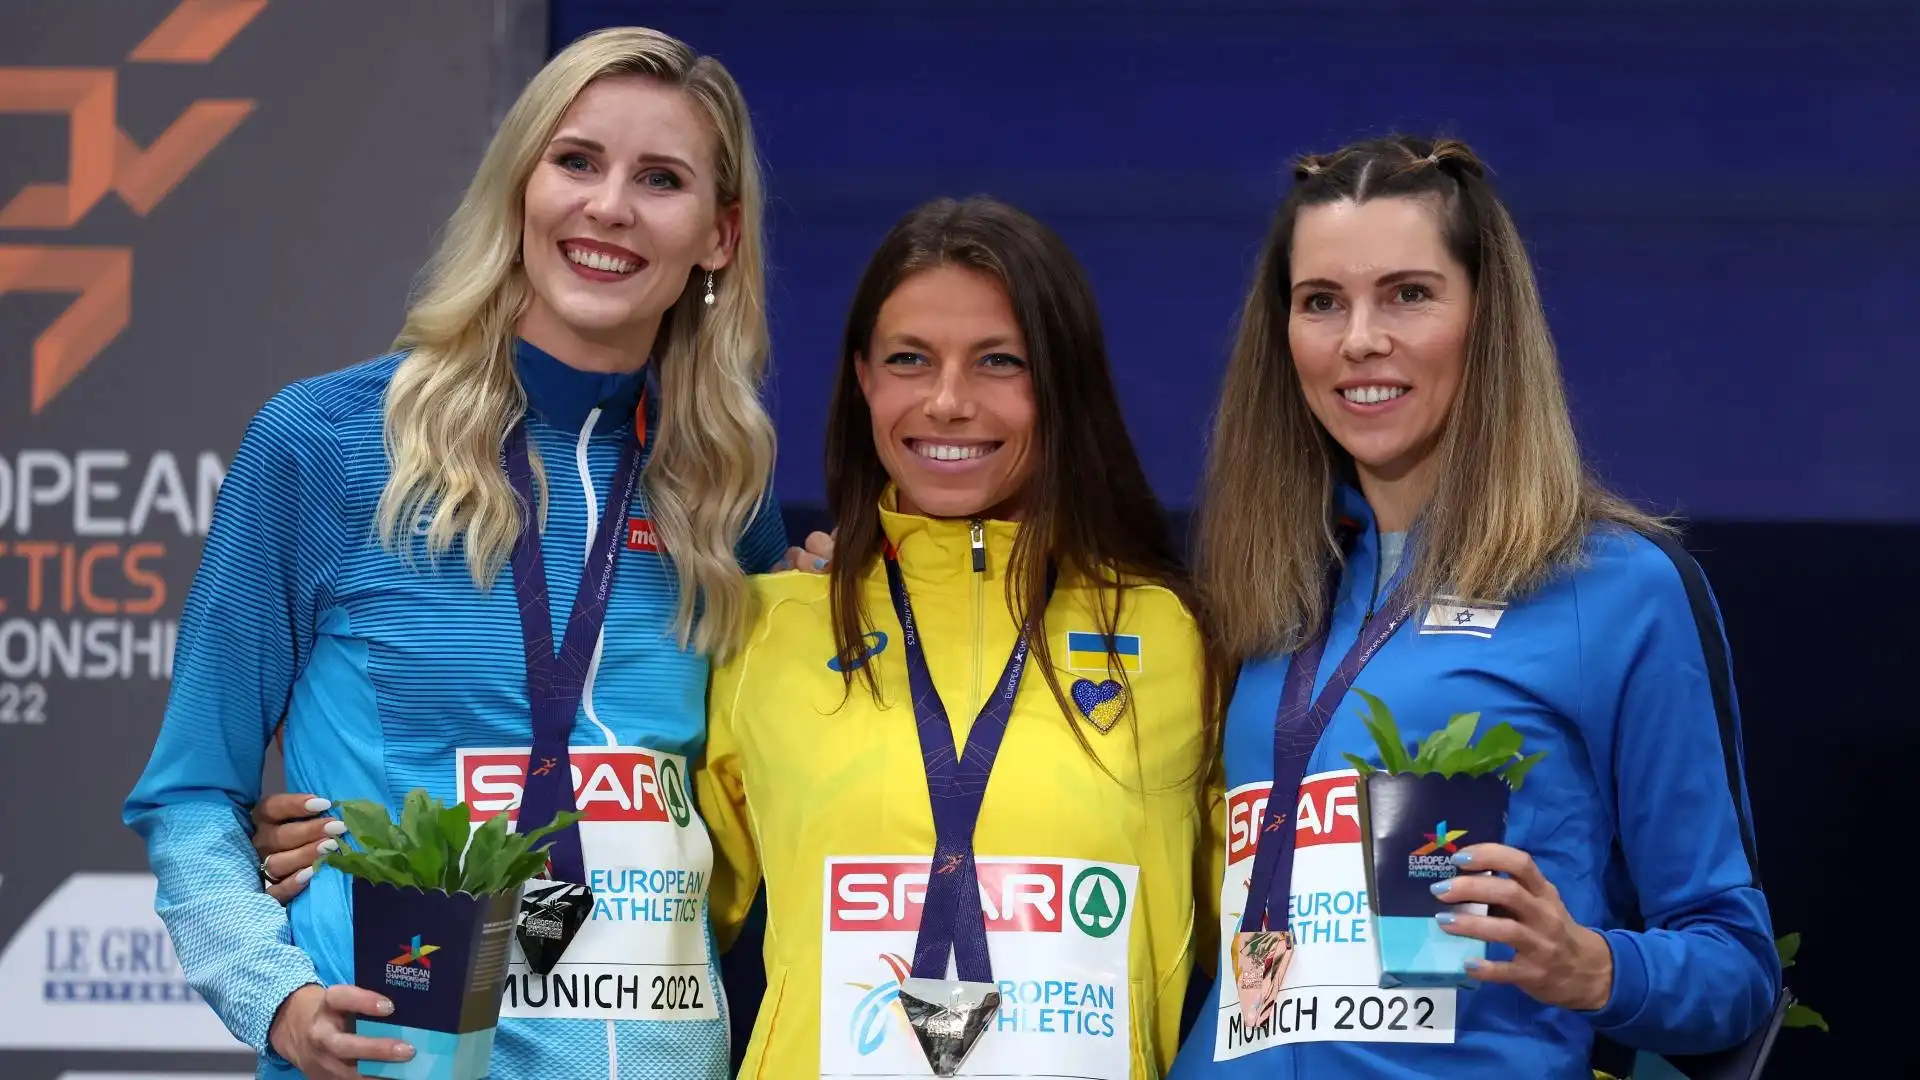 La campionessa ucraina si è piazzata davanti alla finlandese Kristiina Maekelae (seconda) e all'israeliana Hanna Minenko (terza)